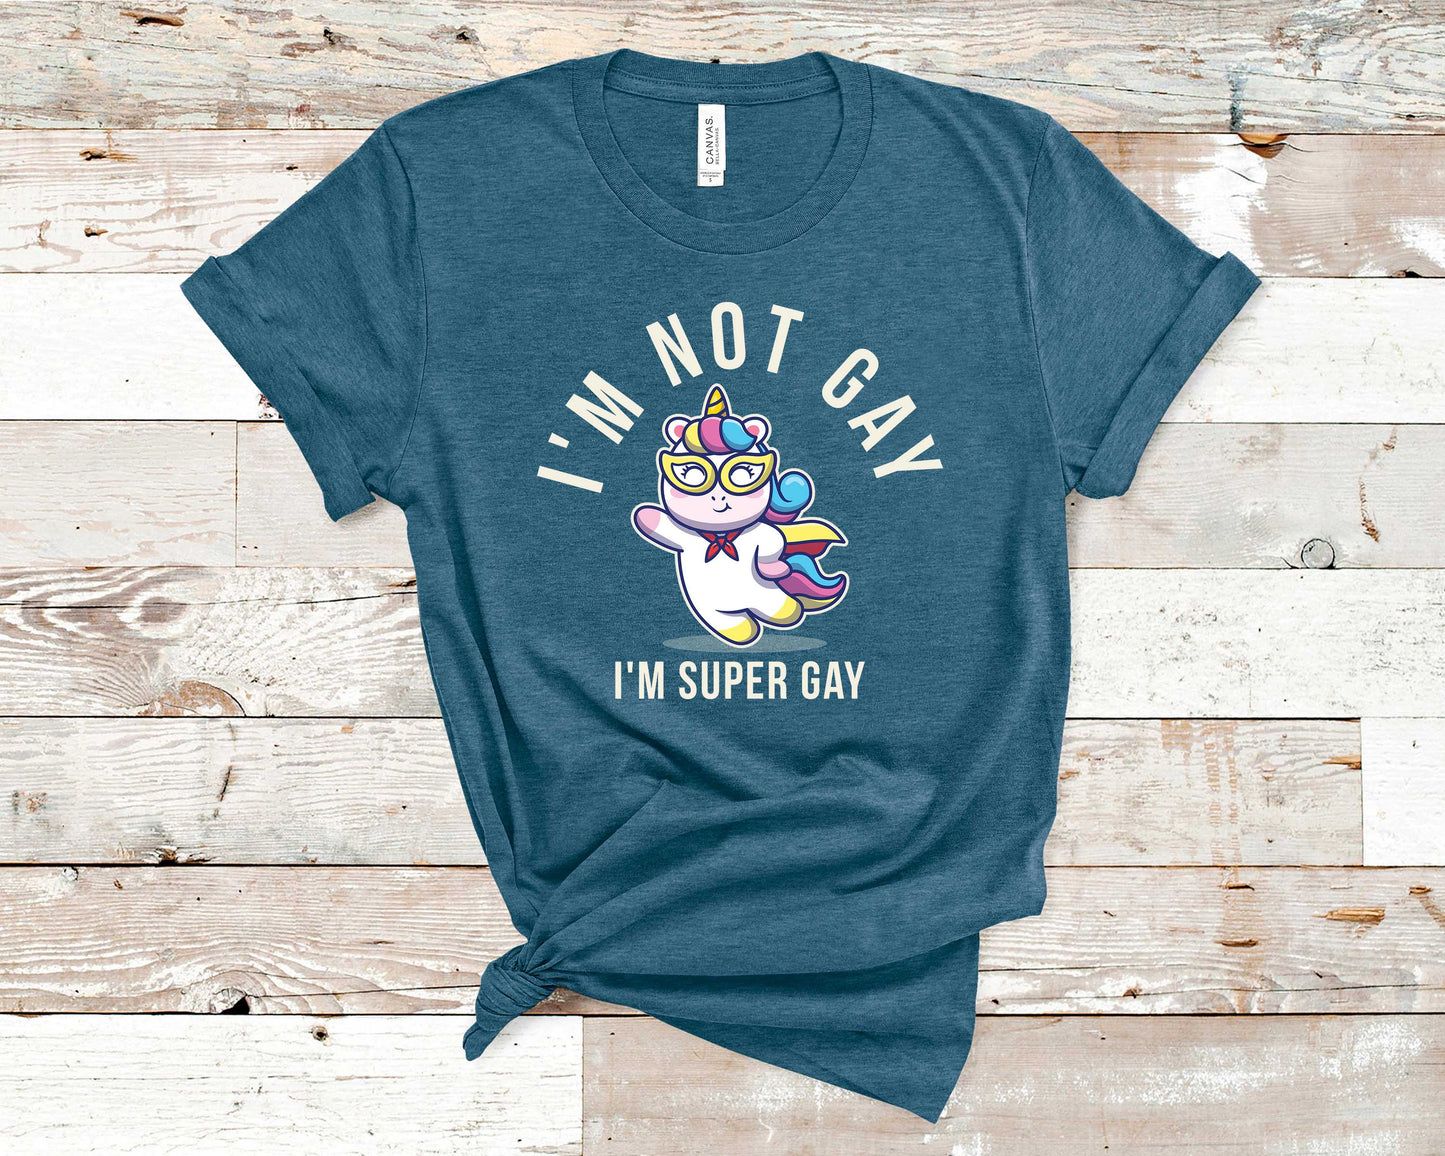 I'm Not Gay, I'm Super Gay - LGBTQ